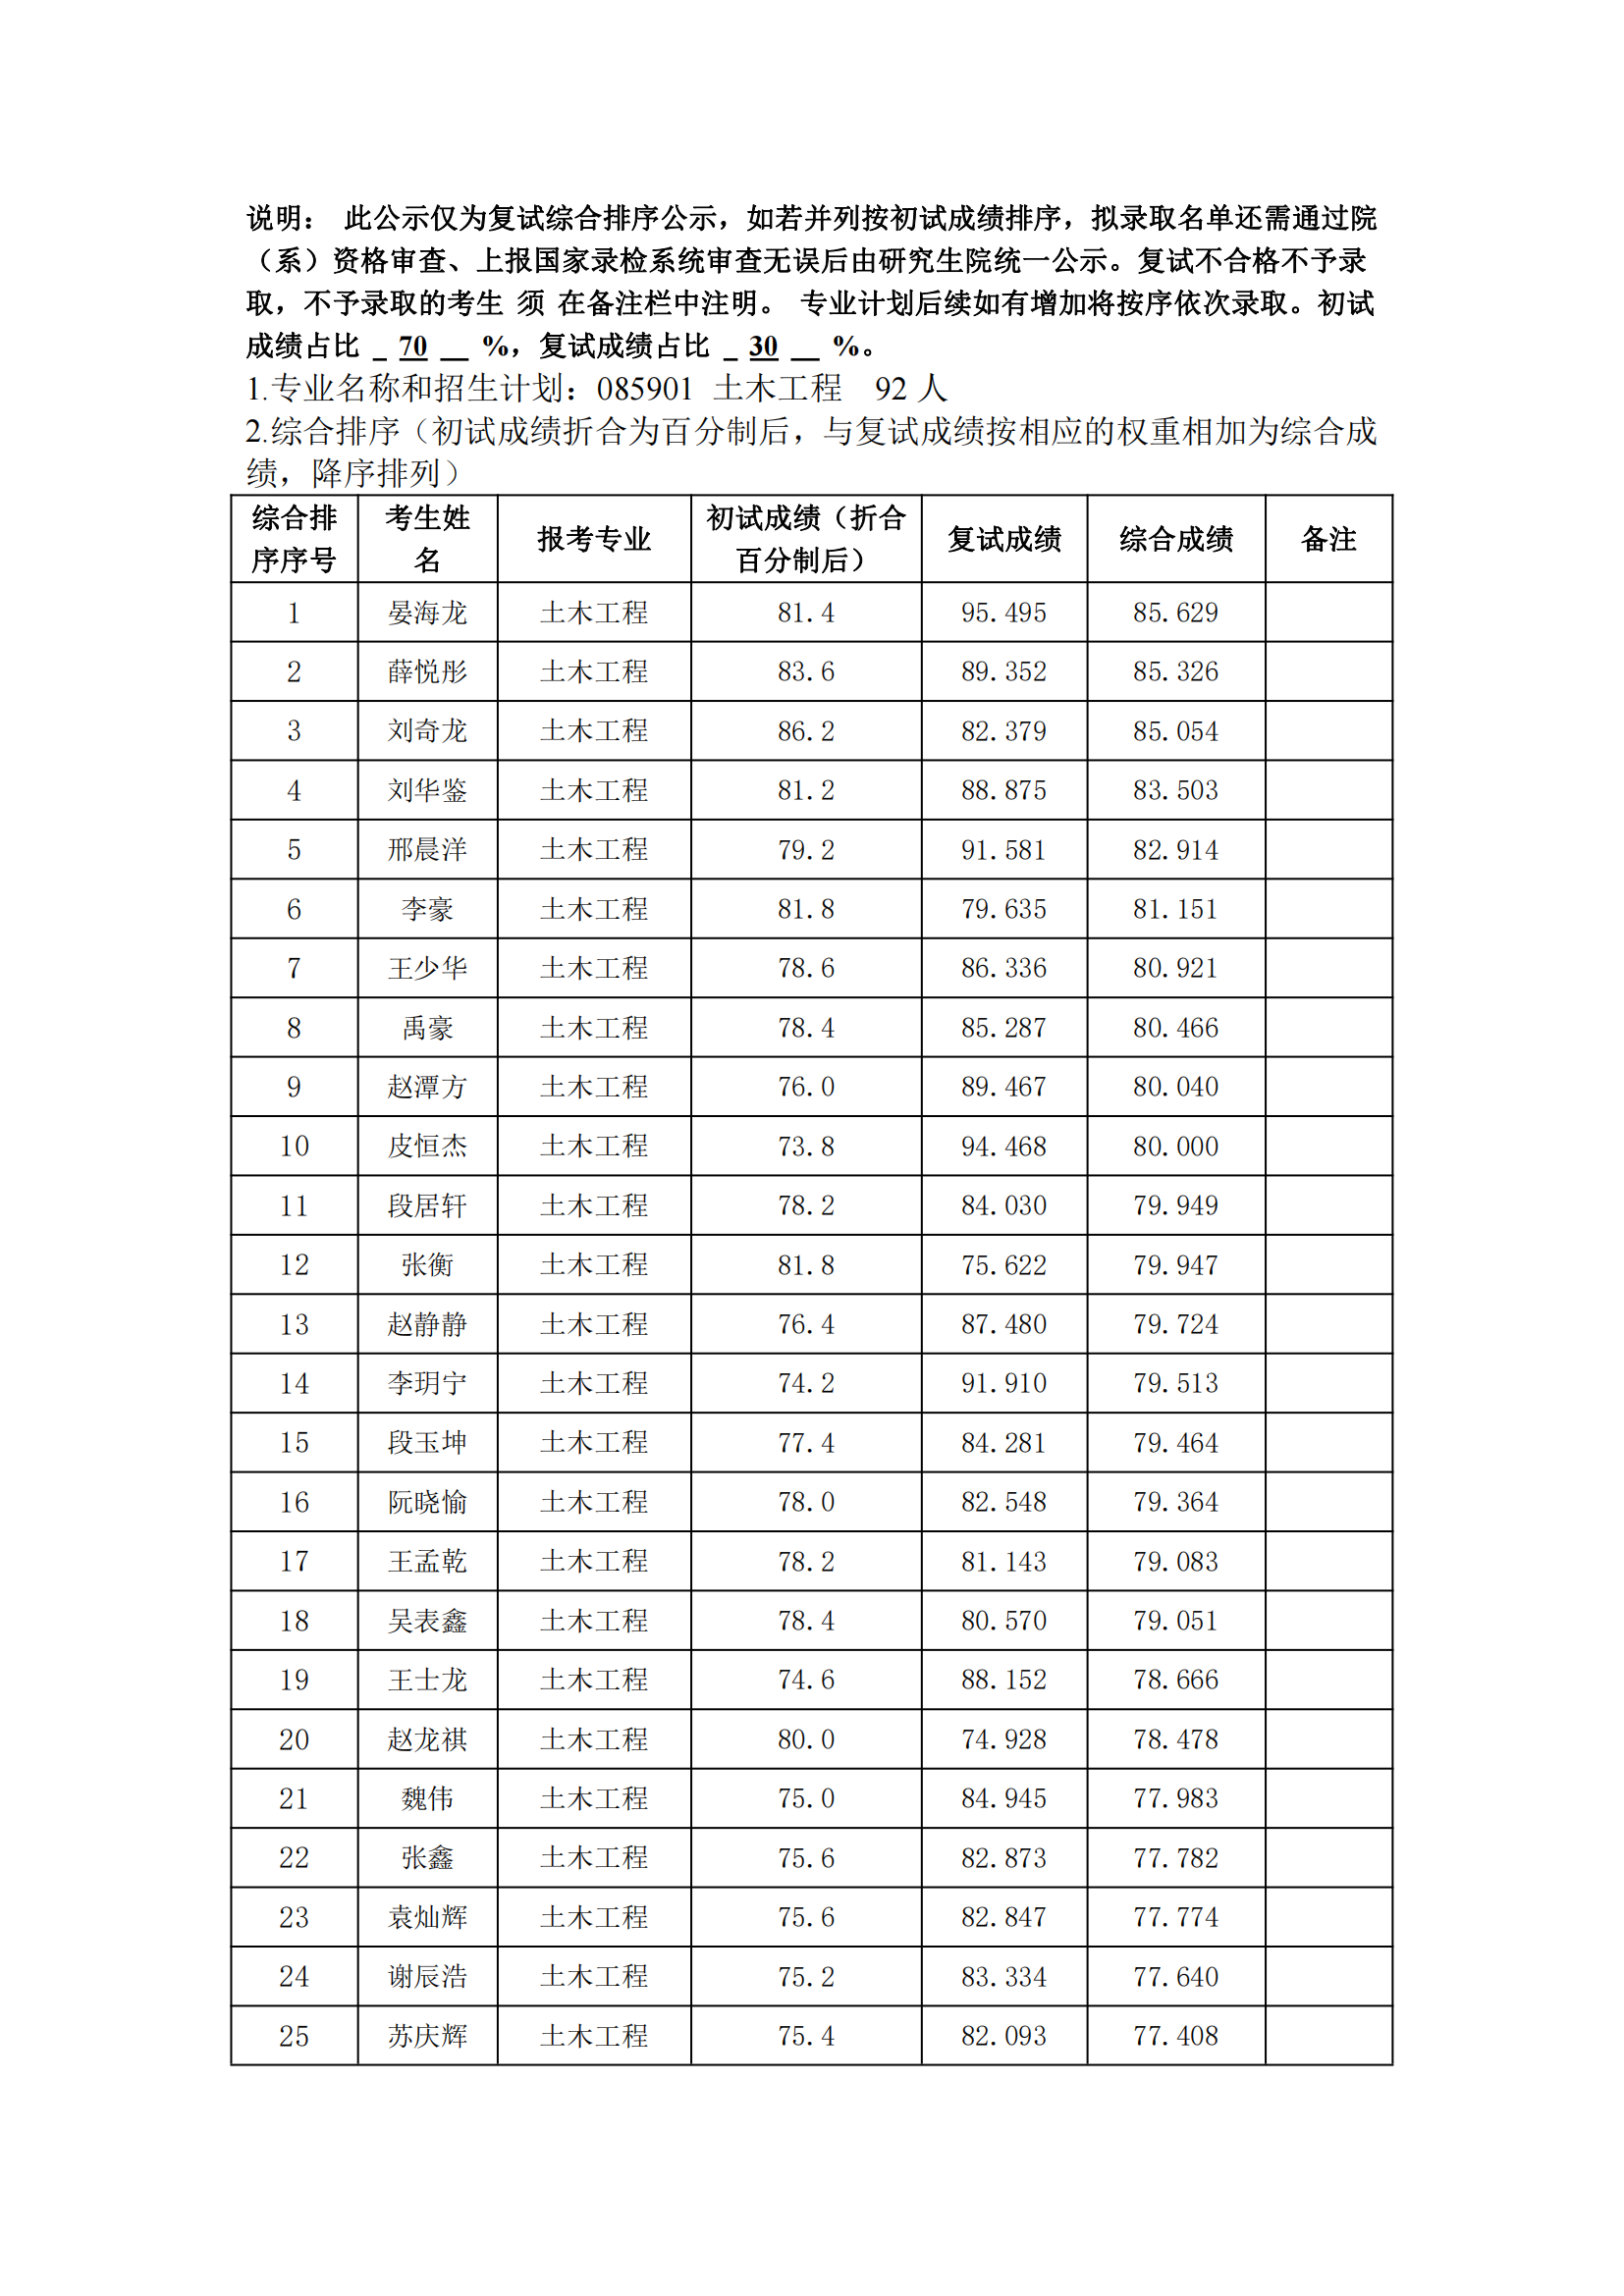 郑州大学2022年硕士研究生复试结果综合排序公示表_20231008164632_00.png